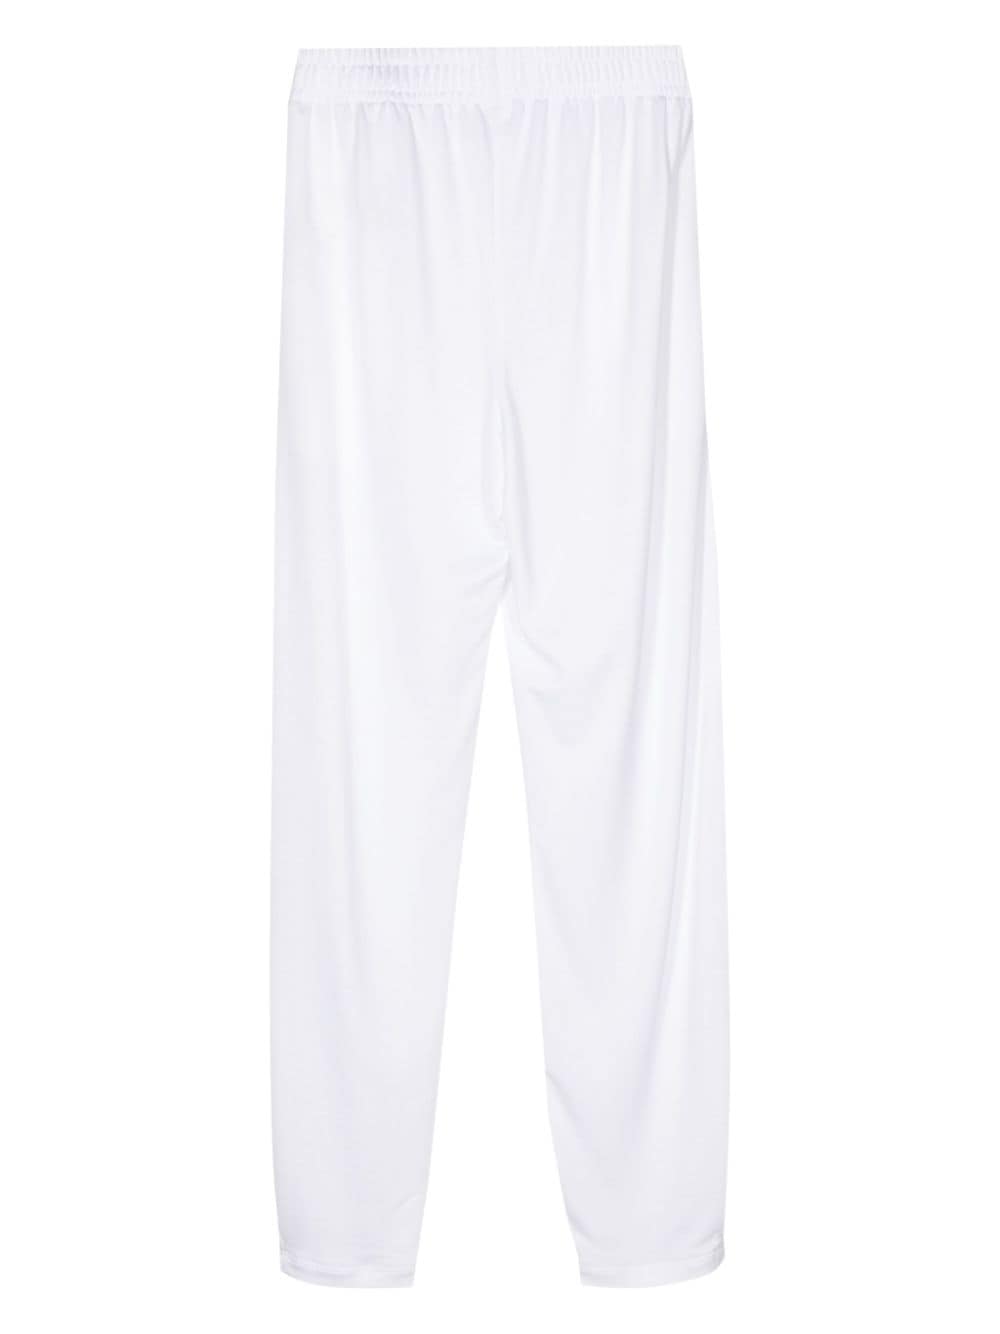 STYLAND Jersey broek met toelopende pijpen - Wit